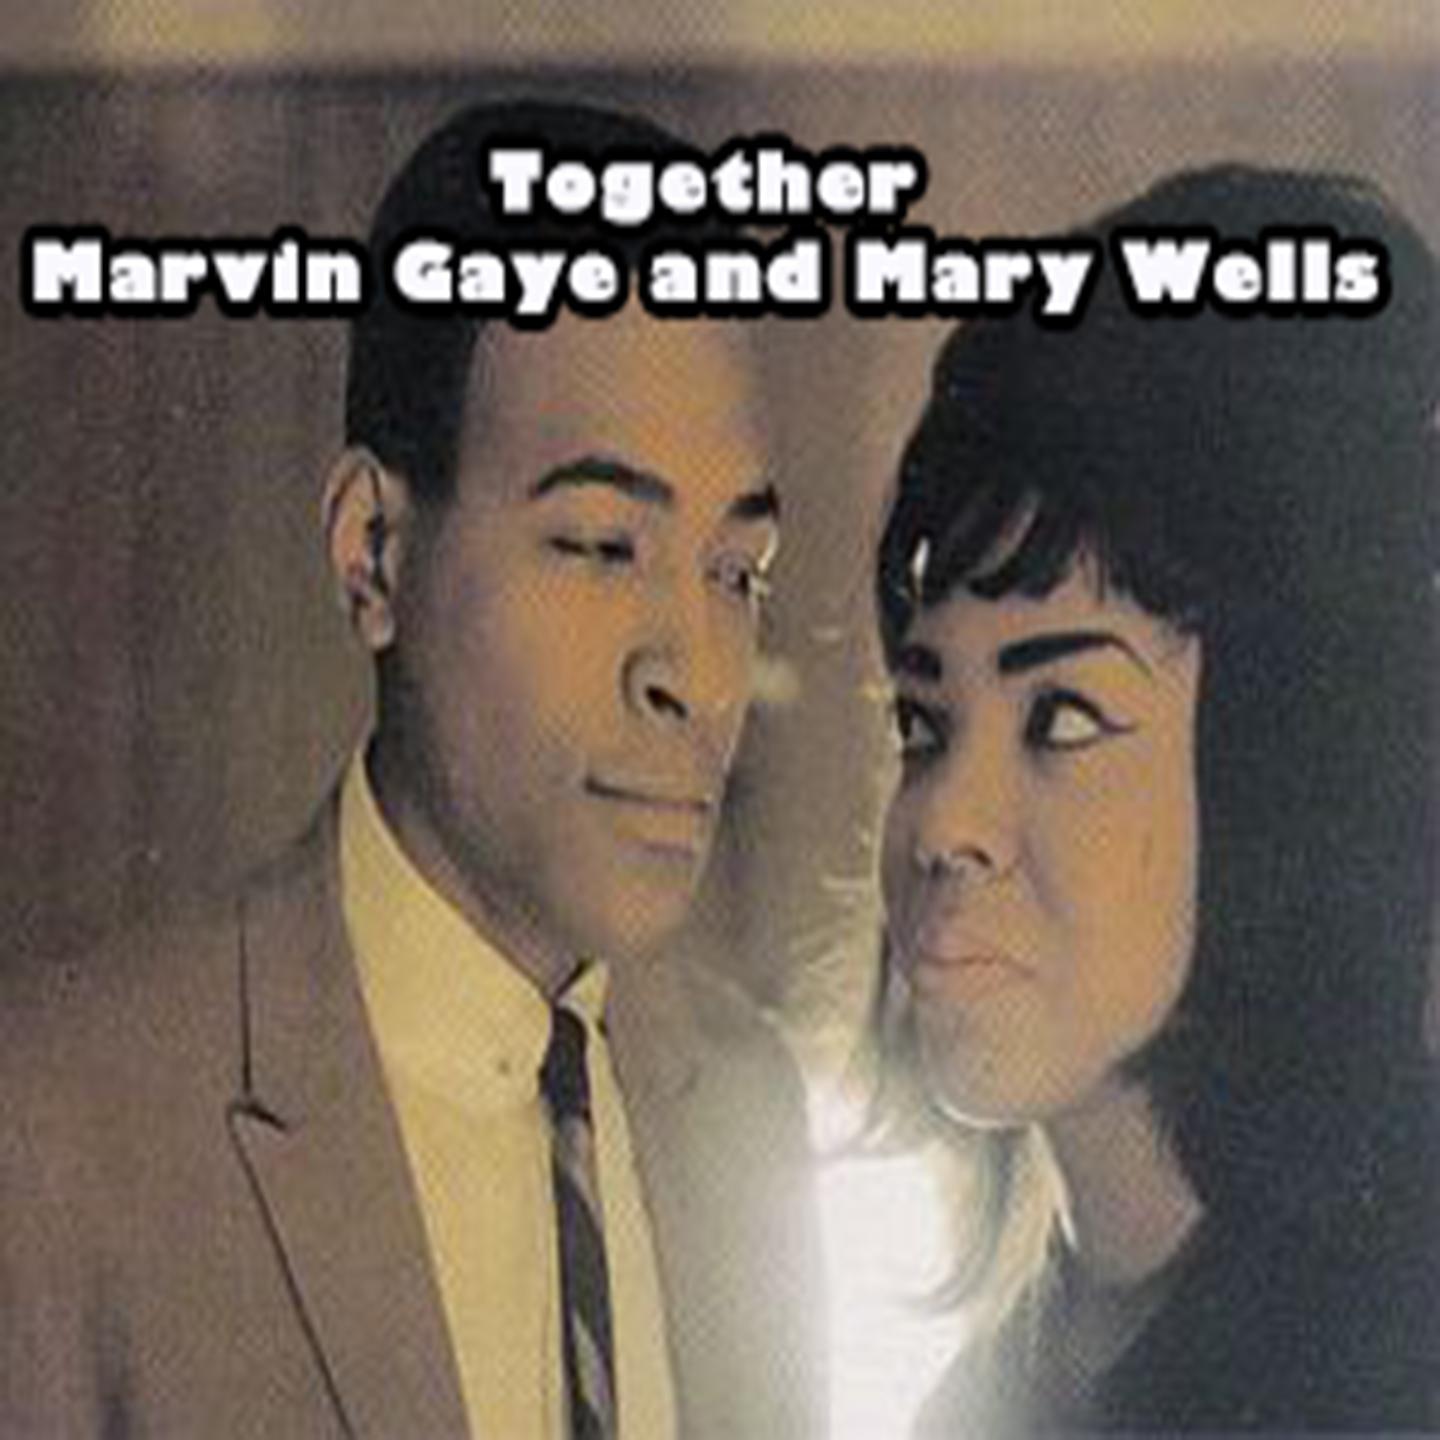 Together - Marvin Gaye